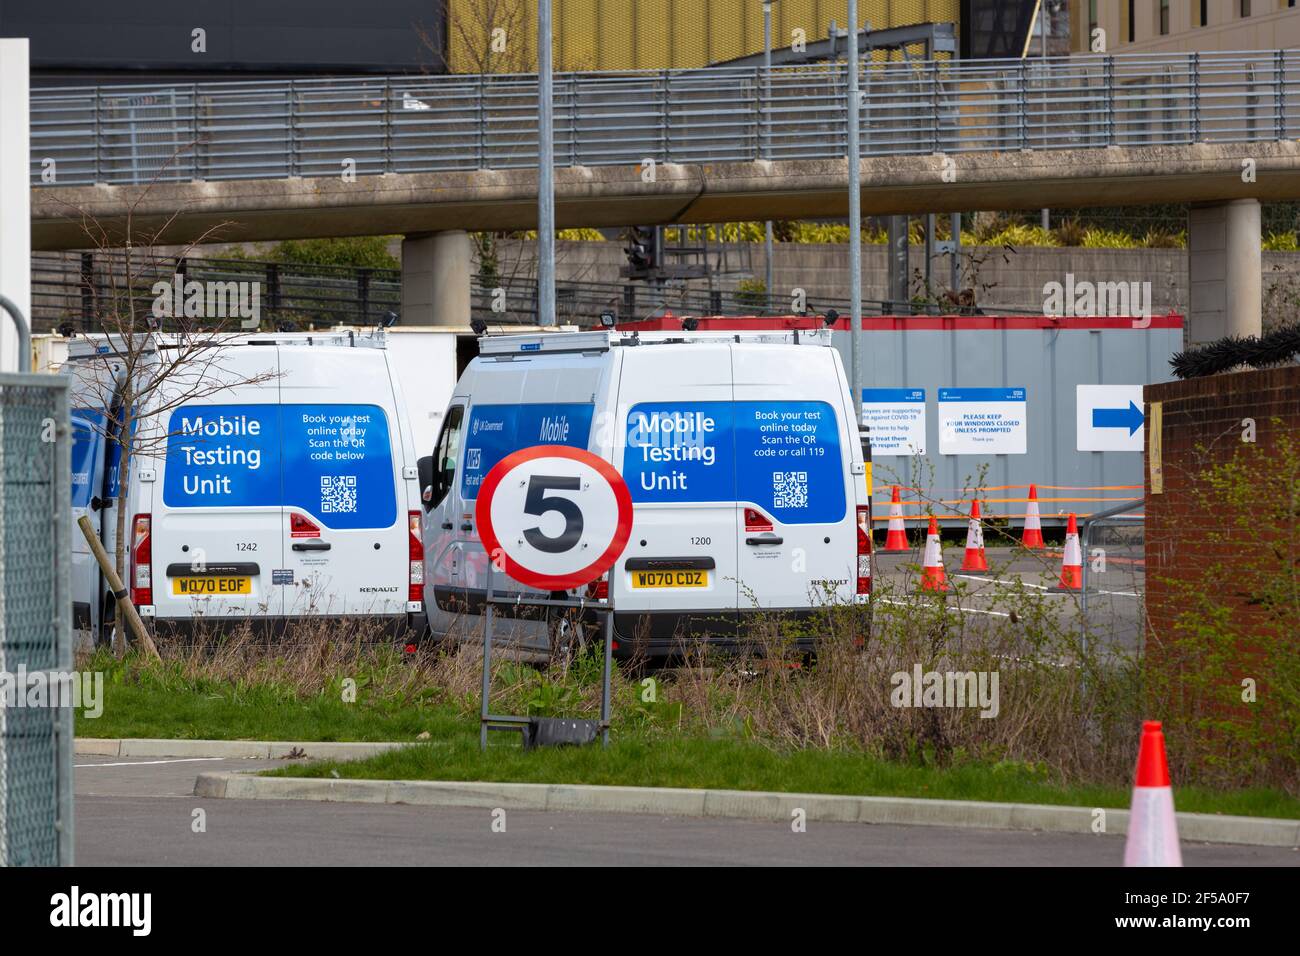 Mobile testing covid unit vans, ashford, kent, uk Stock Photo